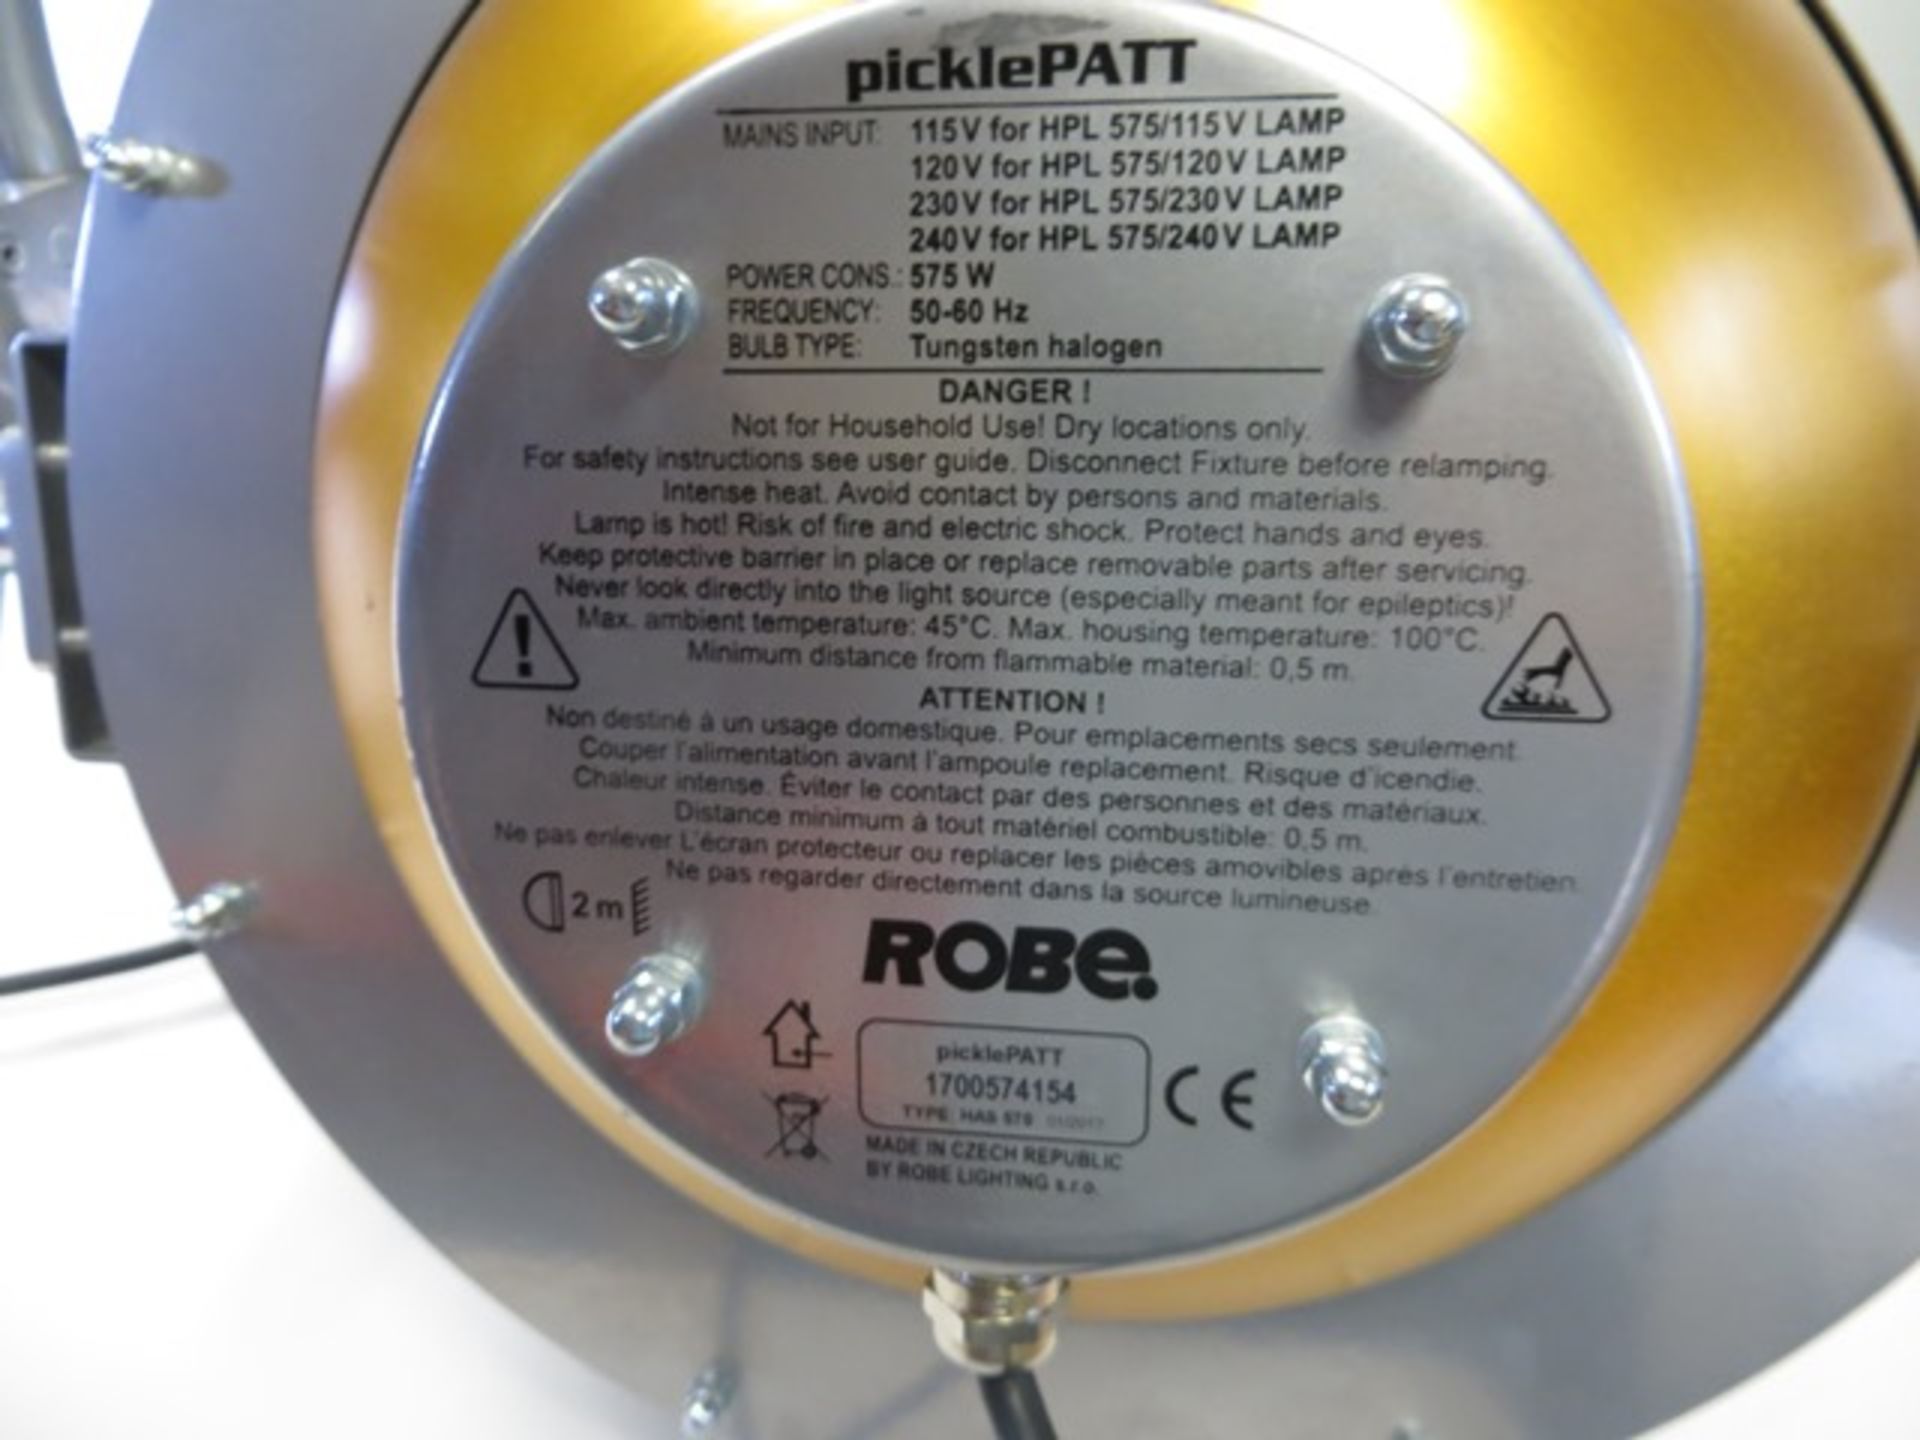 Pair of Robe Pickle Patt type HAS 575 Lamps s/n 1700562407 & 1700574154 c/w Flight Case - Image 5 of 8